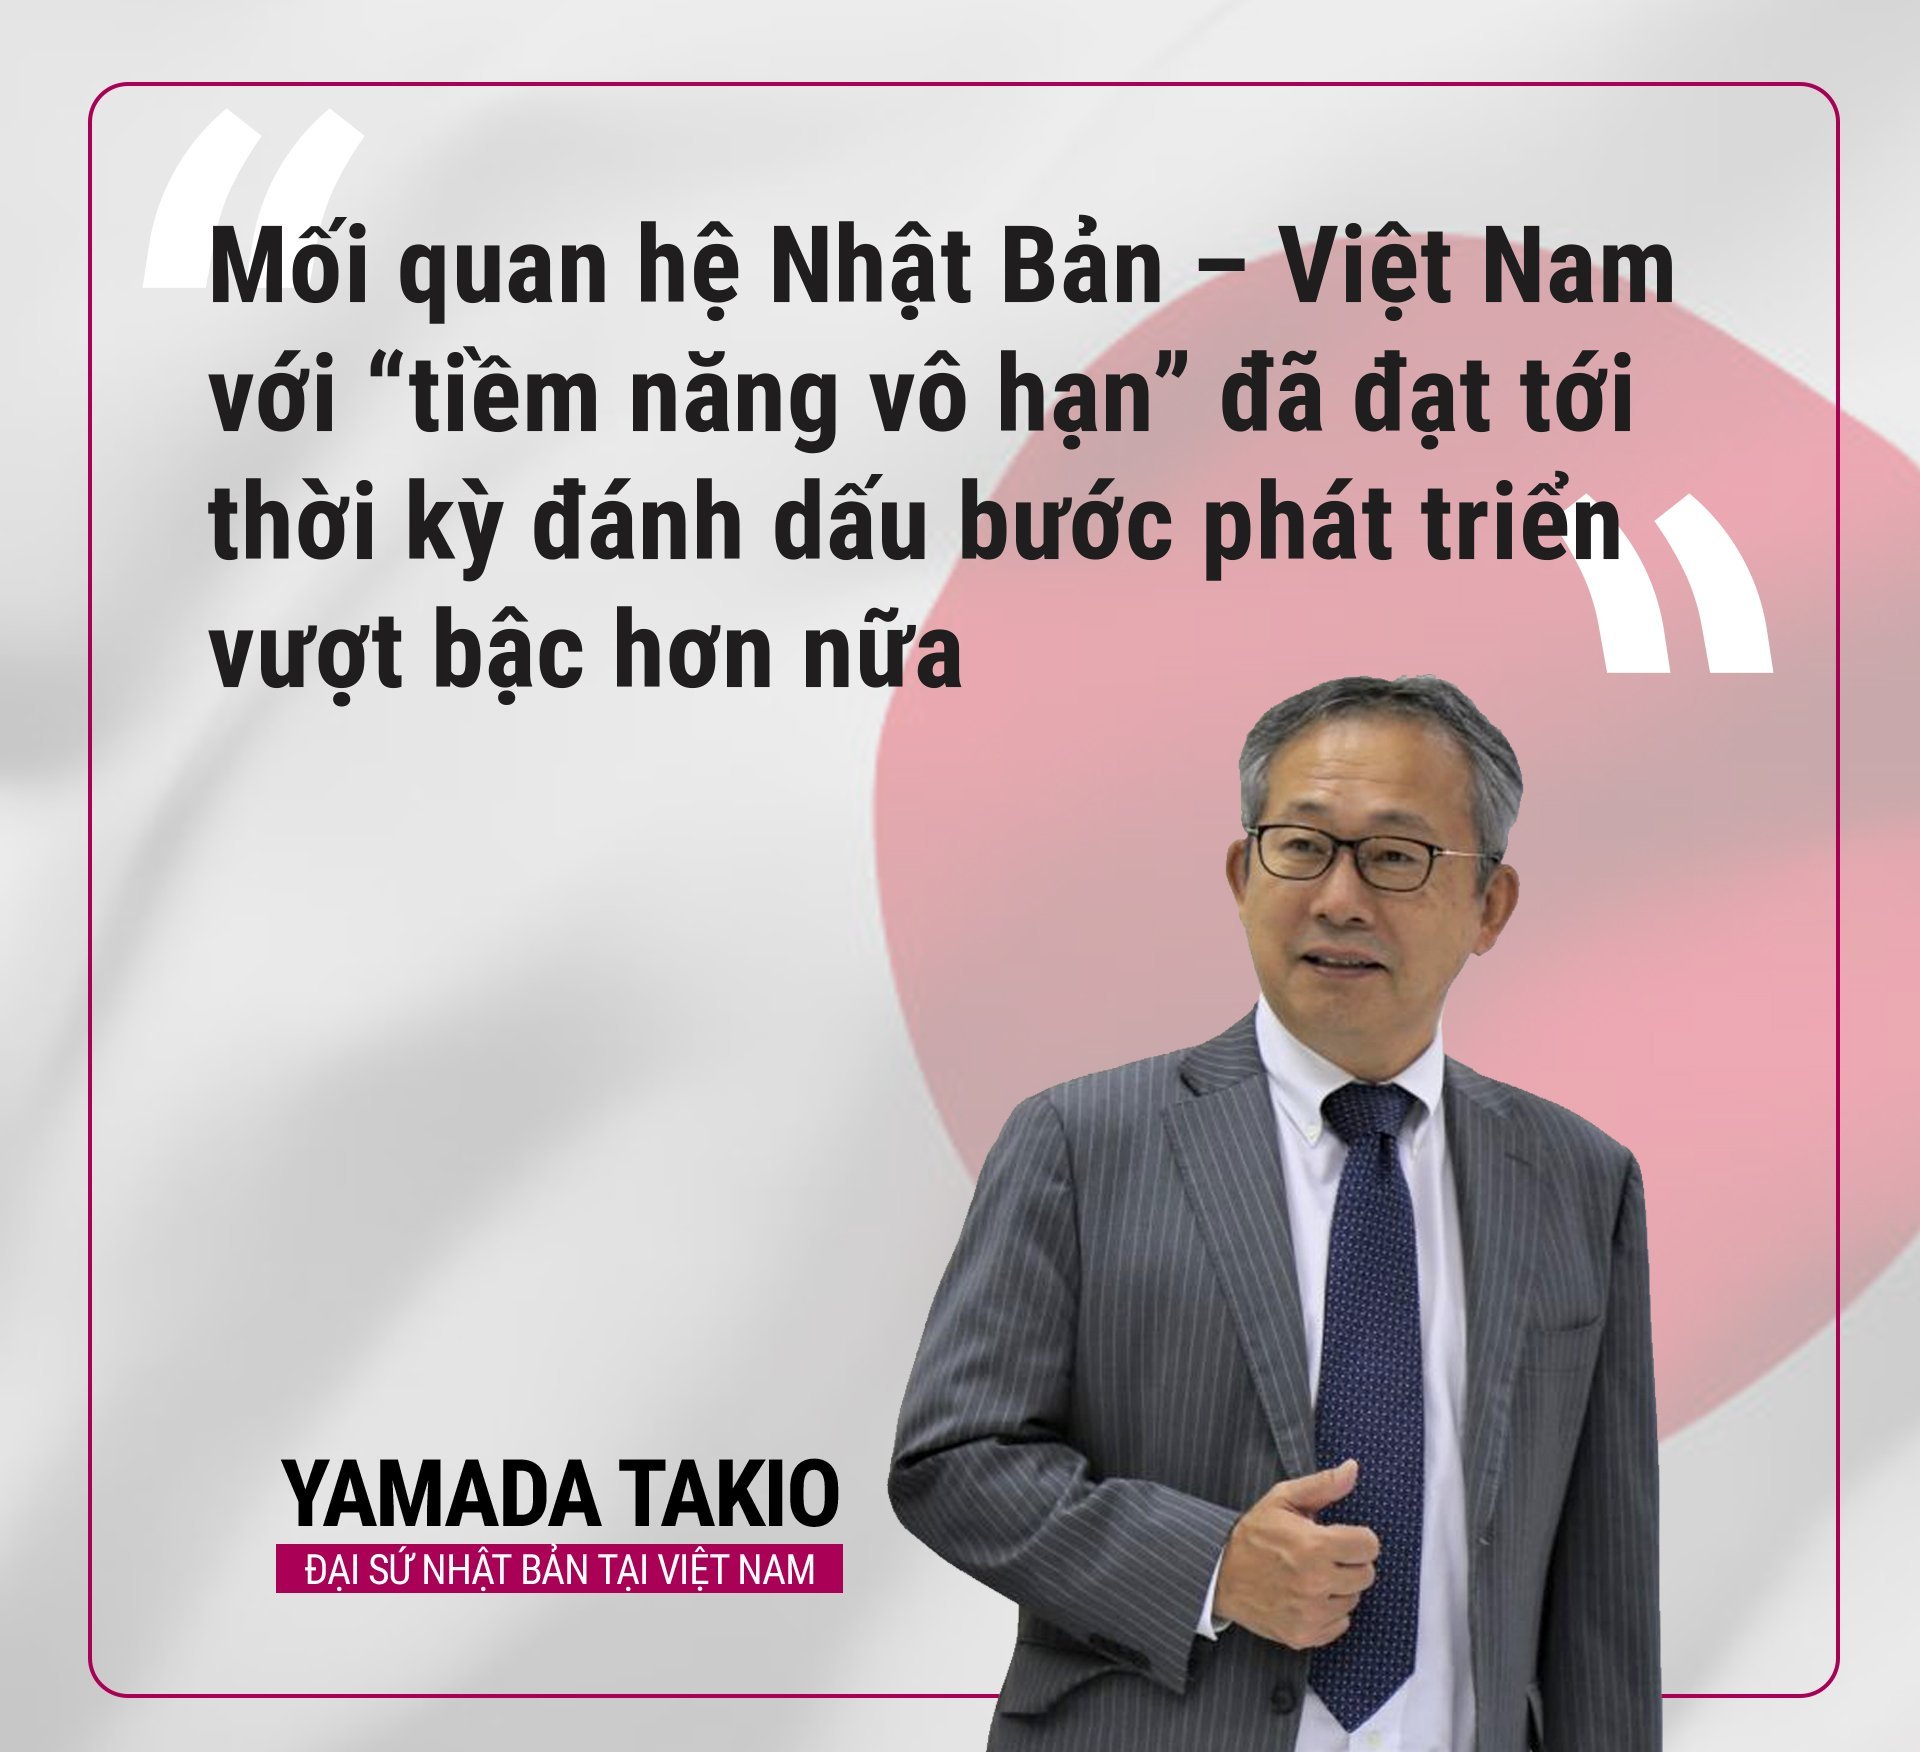 Đại sứ Nhật Bản Yamada Takio. Đồ hoạ: Anh Thu